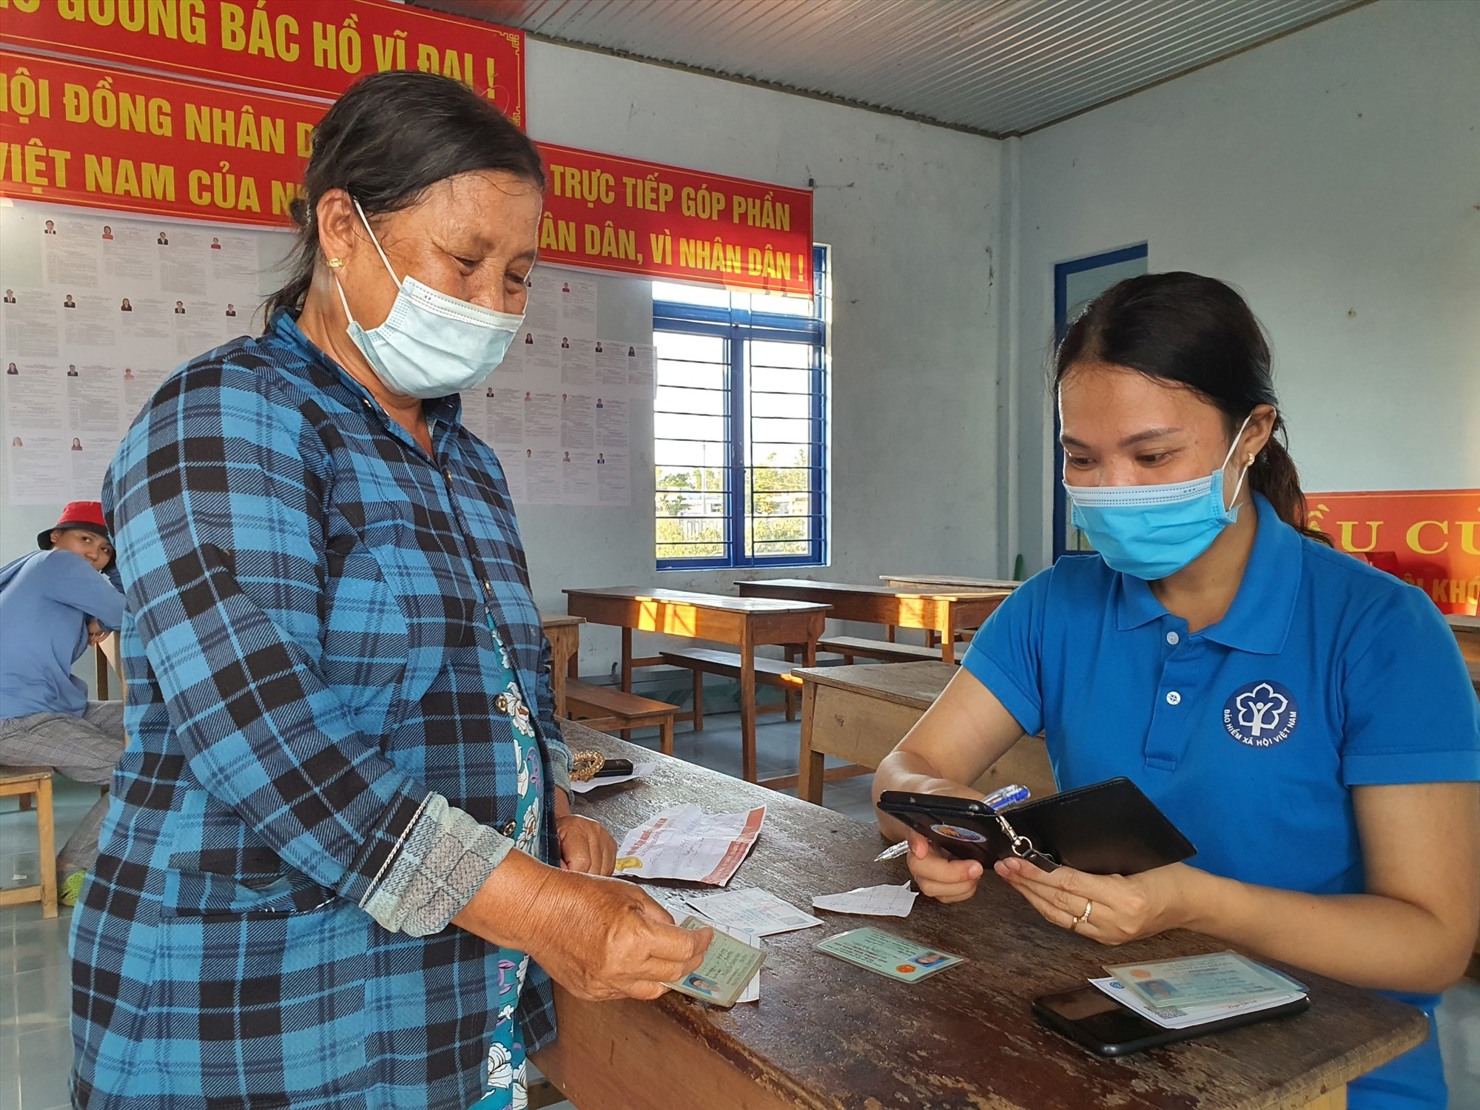 Ngành BHXH Việt Nam đẩy mạnh tuyên truyền về những lợi ích khi tham gia BHXH, bảo hiểm y tế cho người dân.